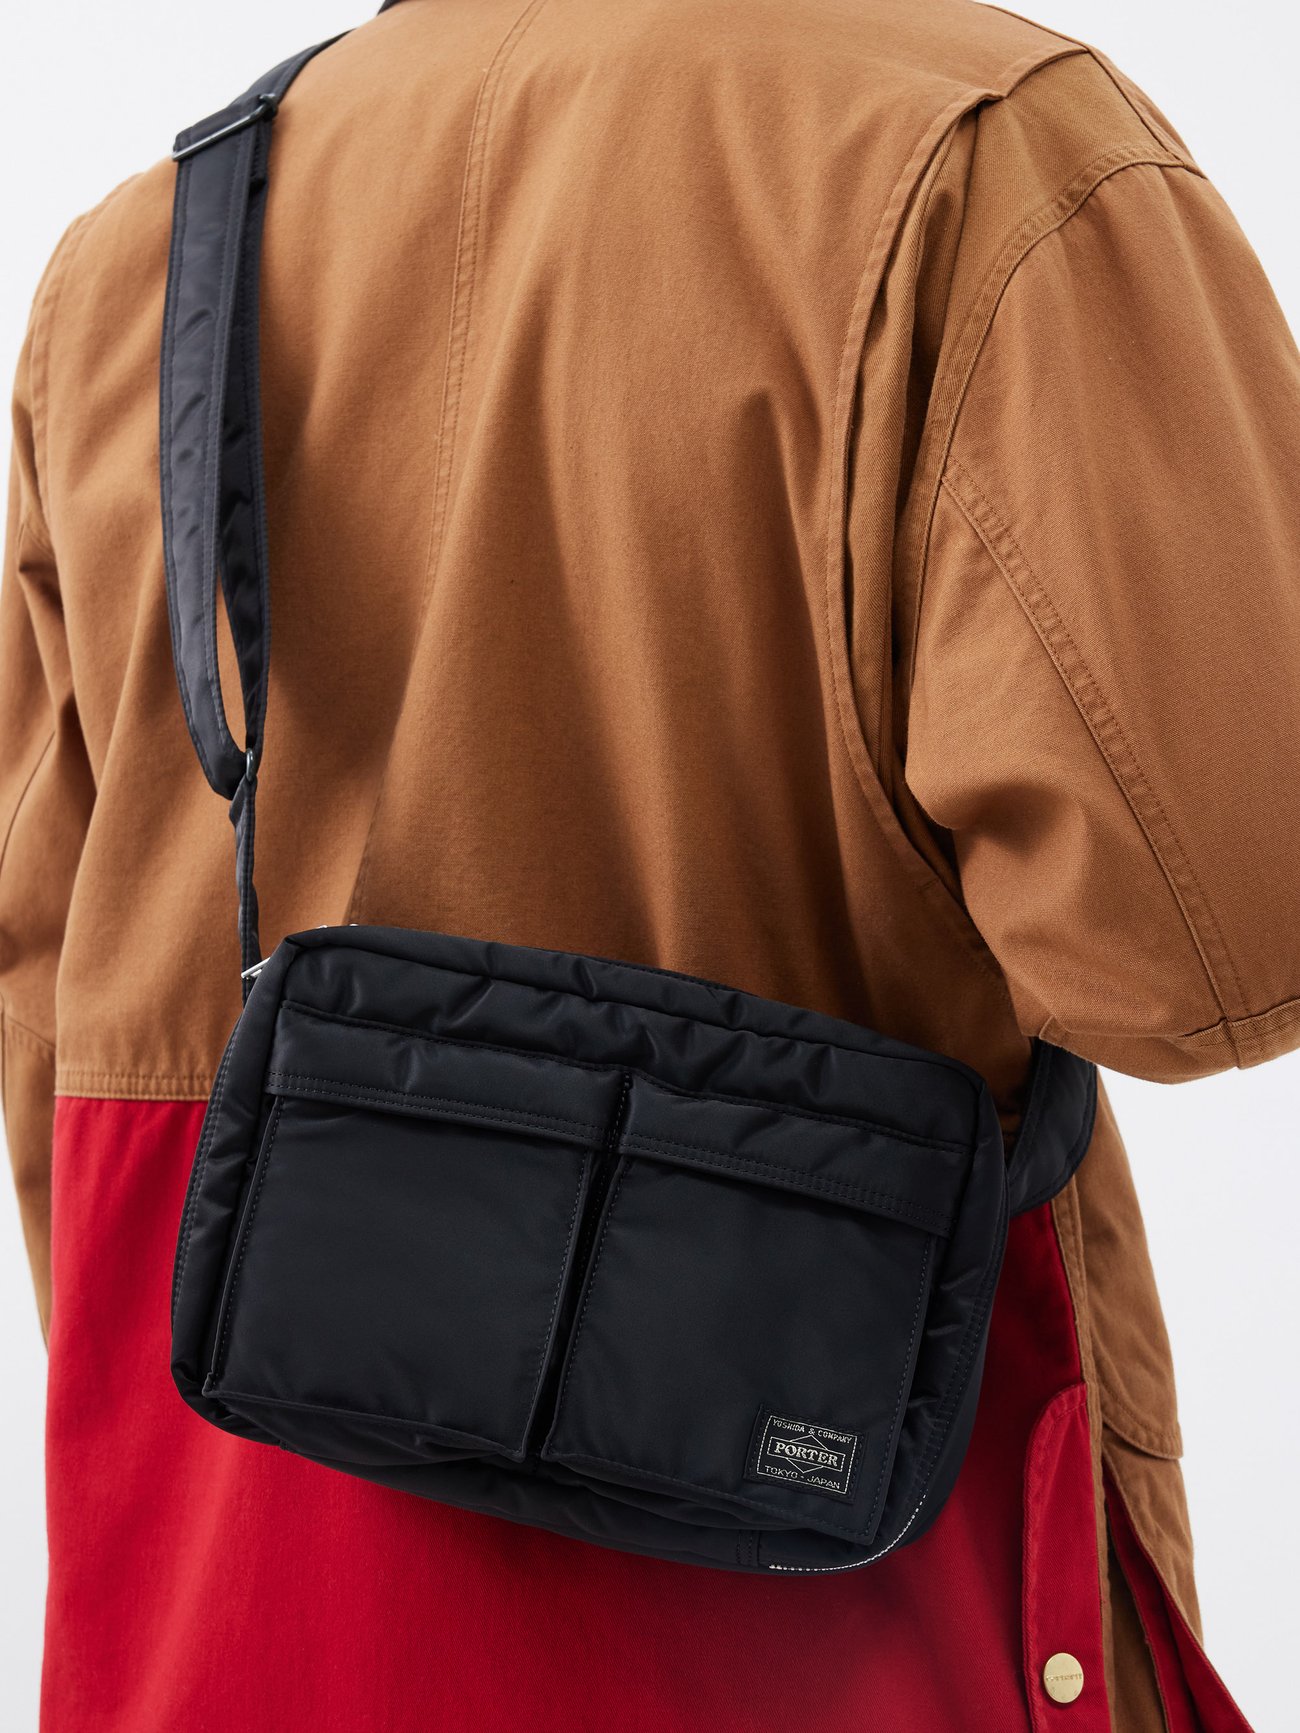 Porter-Yoshida & Co. Tanker Clip Shoulder Bag